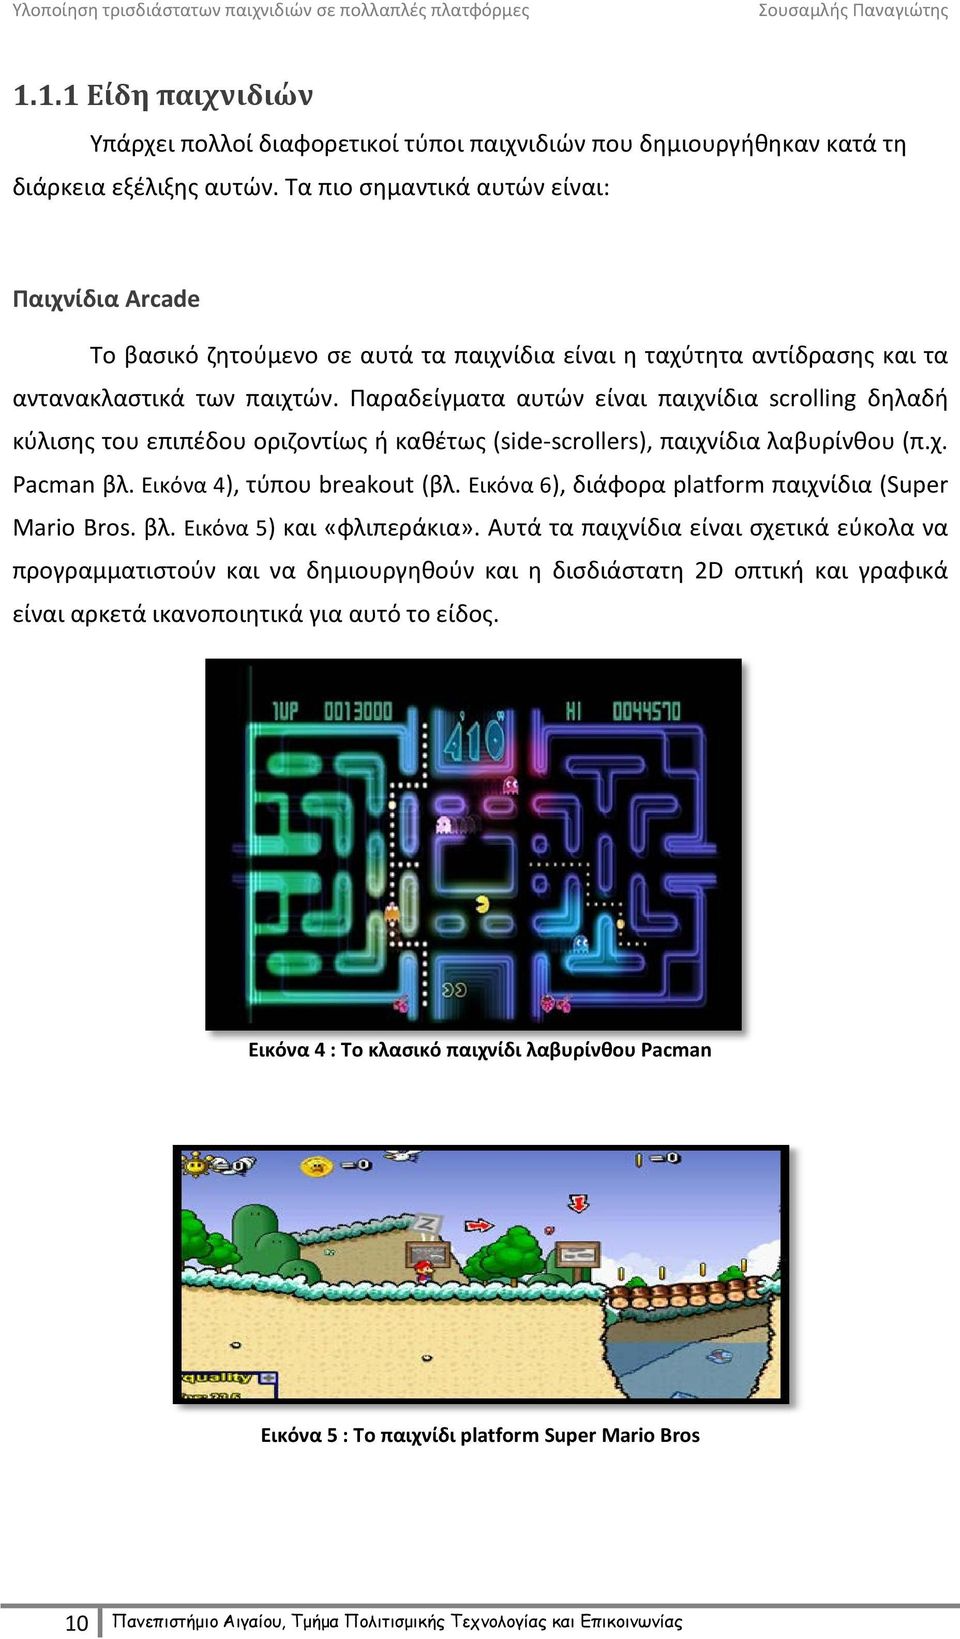 Παραδείγματα αυτών είναι παιχνίδια scrolling δηλαδή κύλισης του επιπέδου οριζοντίως ή καθέτως (side-scrollers), παιχνίδια λαβυρίνθου (π.χ. Pacman βλ. Εικόνα 4), τύπου breakout (βλ.